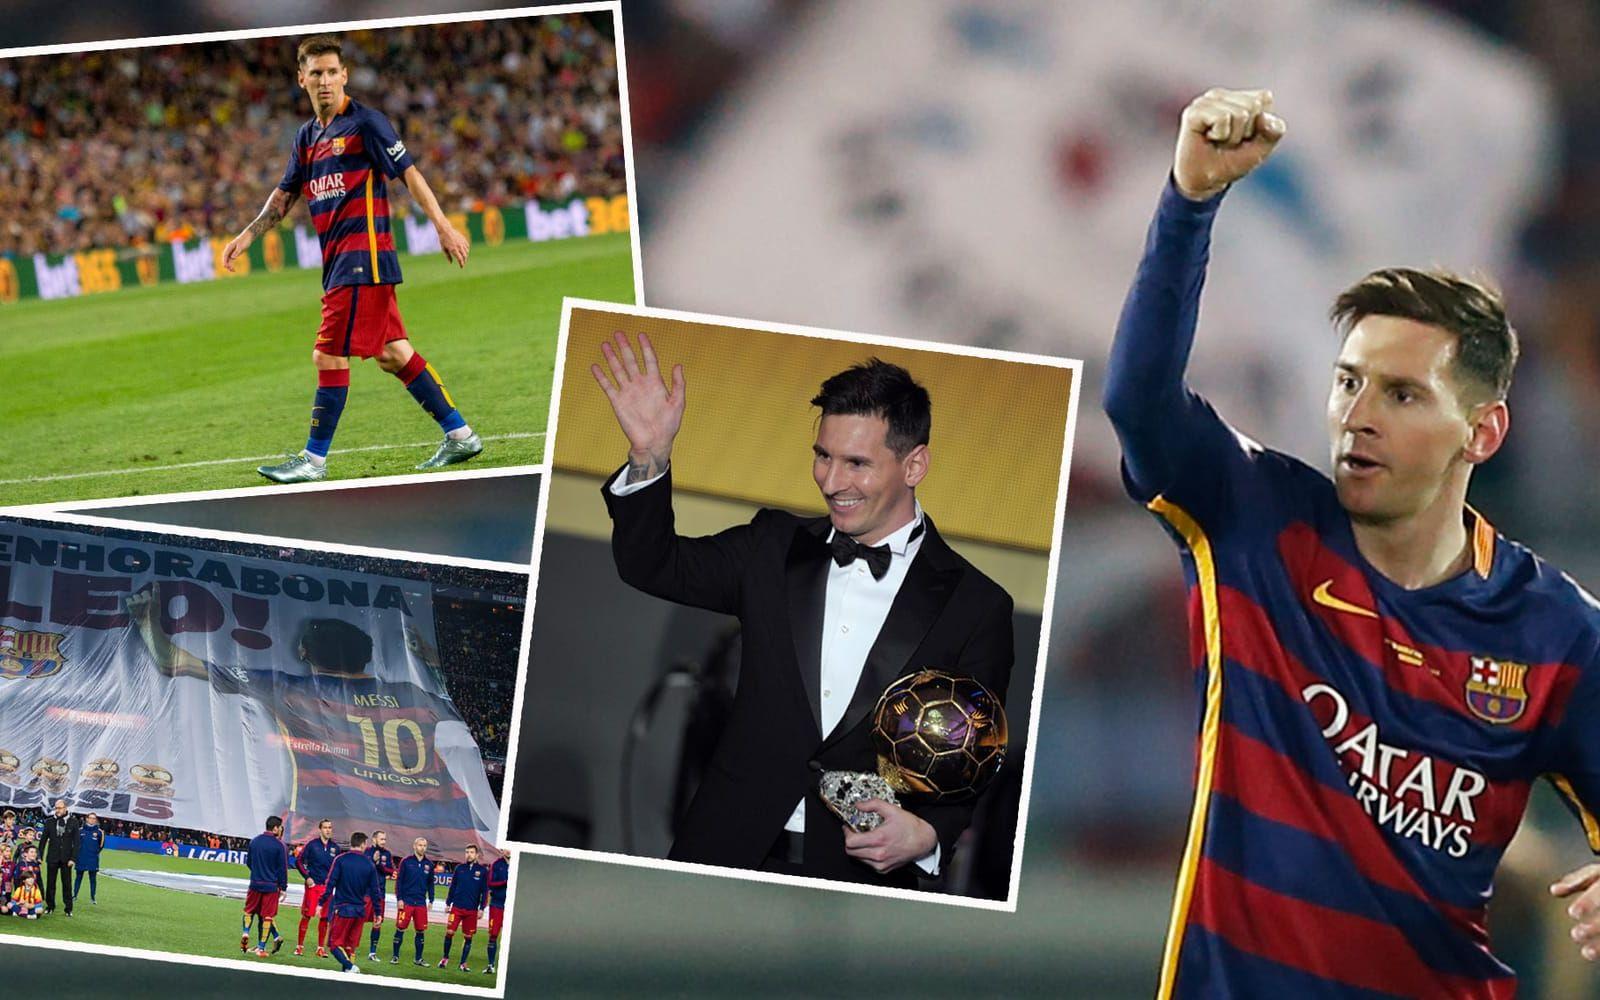 2015. Vinnare: Lionel Messi, Argentina och Barcelona. De två andra slutkandidaterna var Cristiano Ronaldo (tvåa) och Neymar (trea). Foto: Bildbyrån